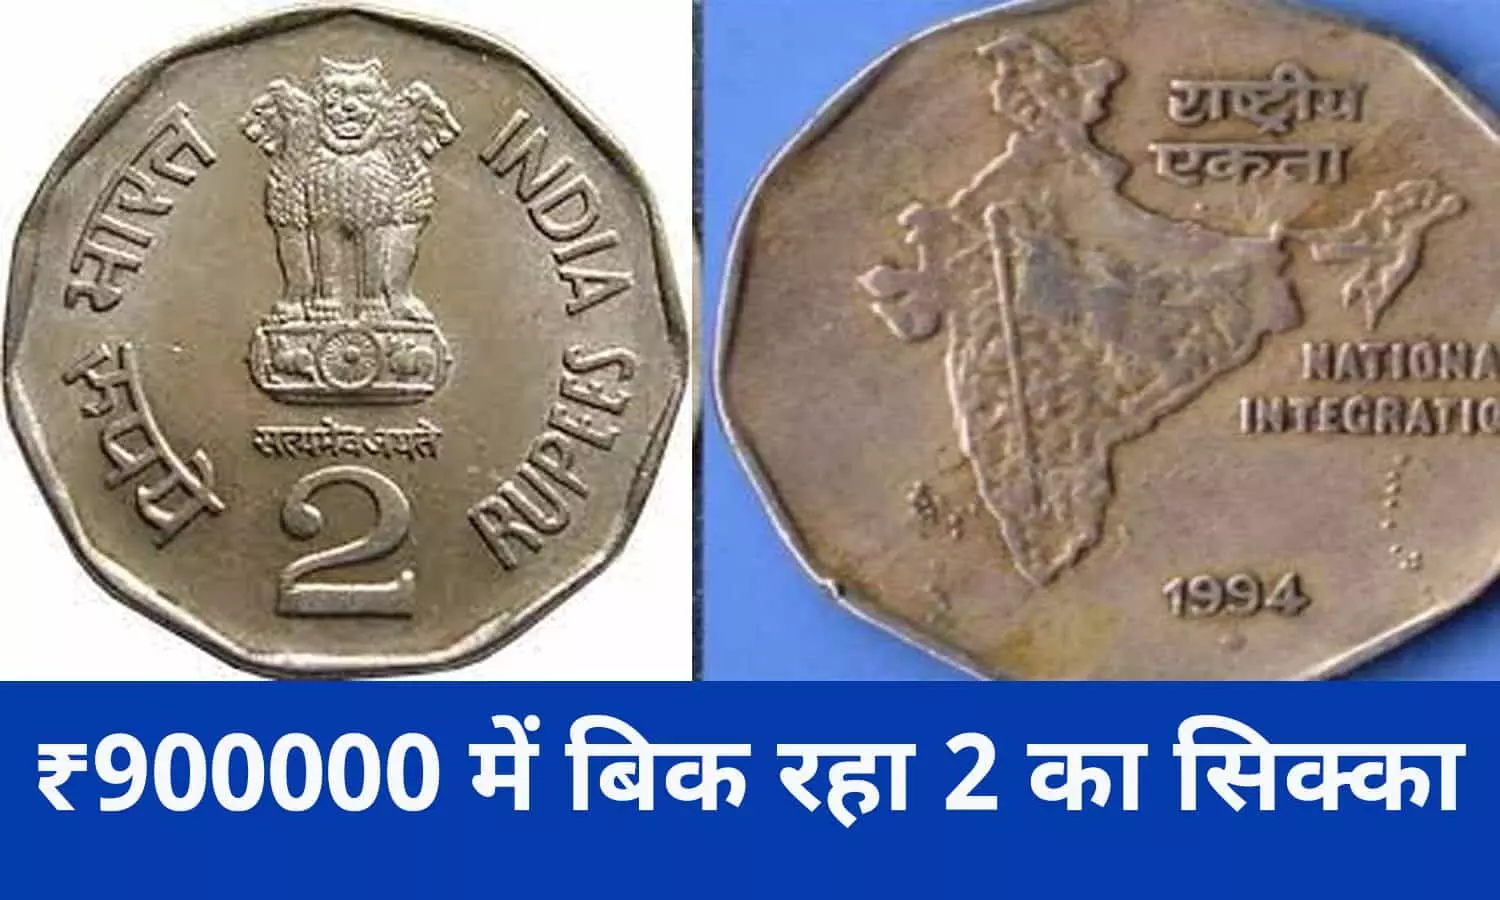 Indian Coin Sell In Hindi 2022: यदि आपके पास सन 1994 के ₹2 के सिक्के में पीछे भारत का झंडा बना है तो आप बनेगे ₹900000 के मालिक, बिन देर किए फटाफट जाने